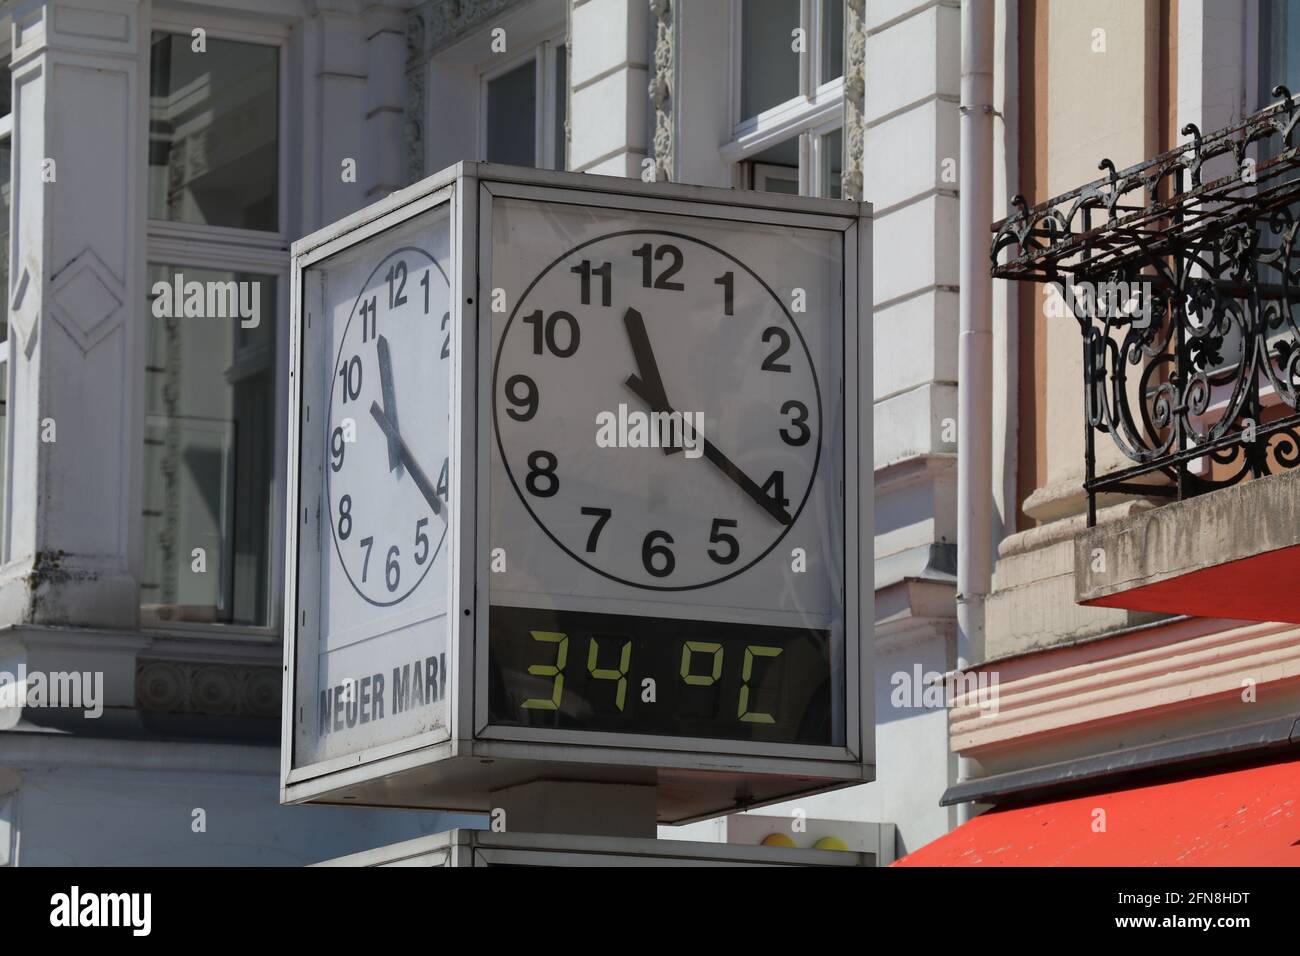 horloge carrée dans un espace public indiquant l'heure et la température. Traduction du texte = nouveau marché (Neuer Markt est le nom du carré) Banque D'Images